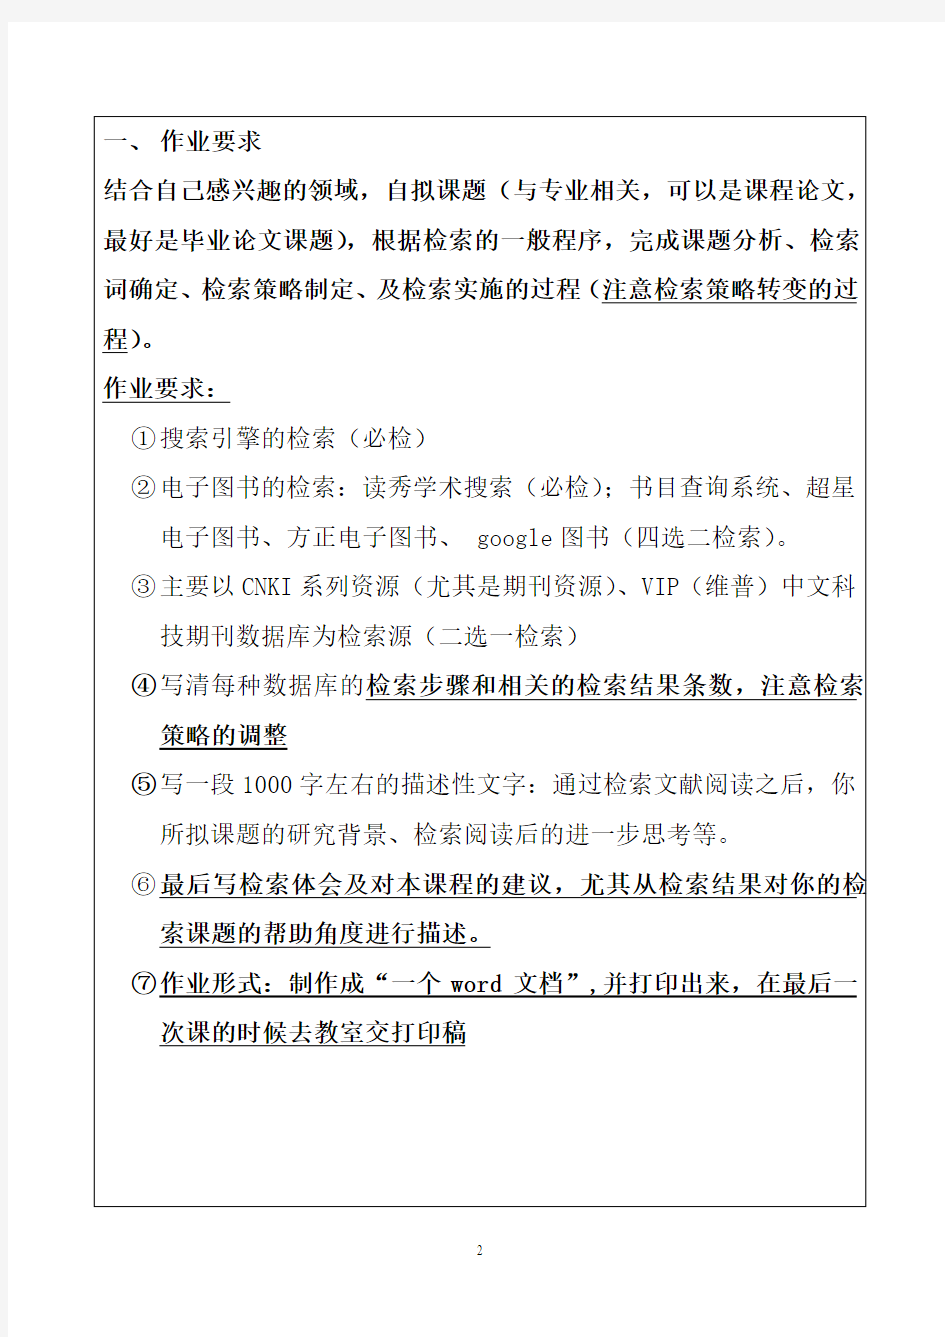 南京工业大学-信息检索作业